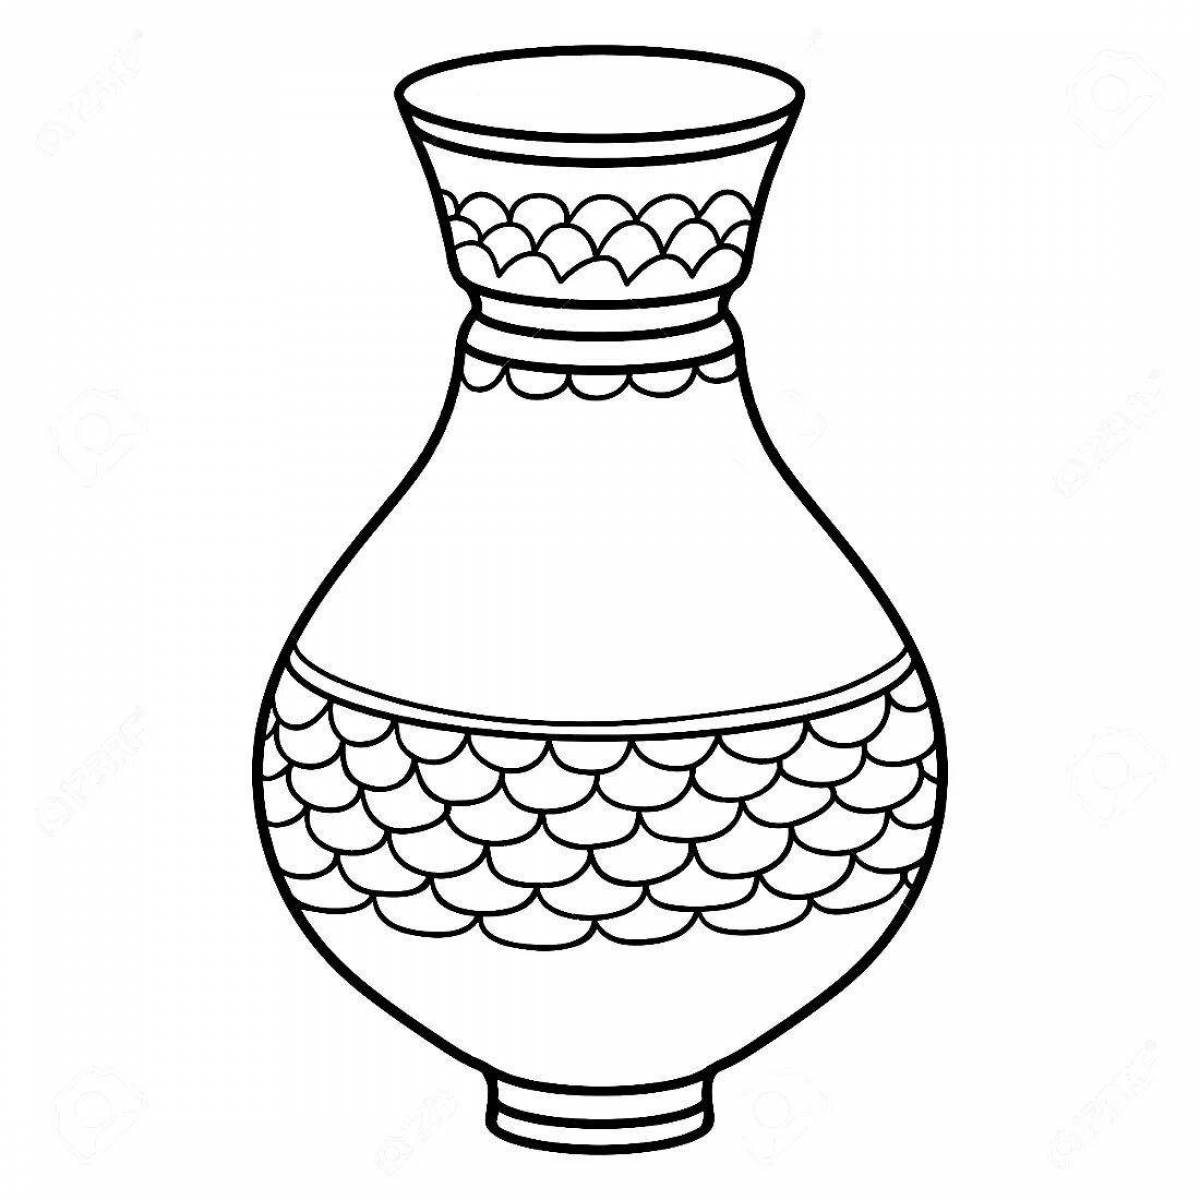 Раскраска вазы с рисунком круги распечатать